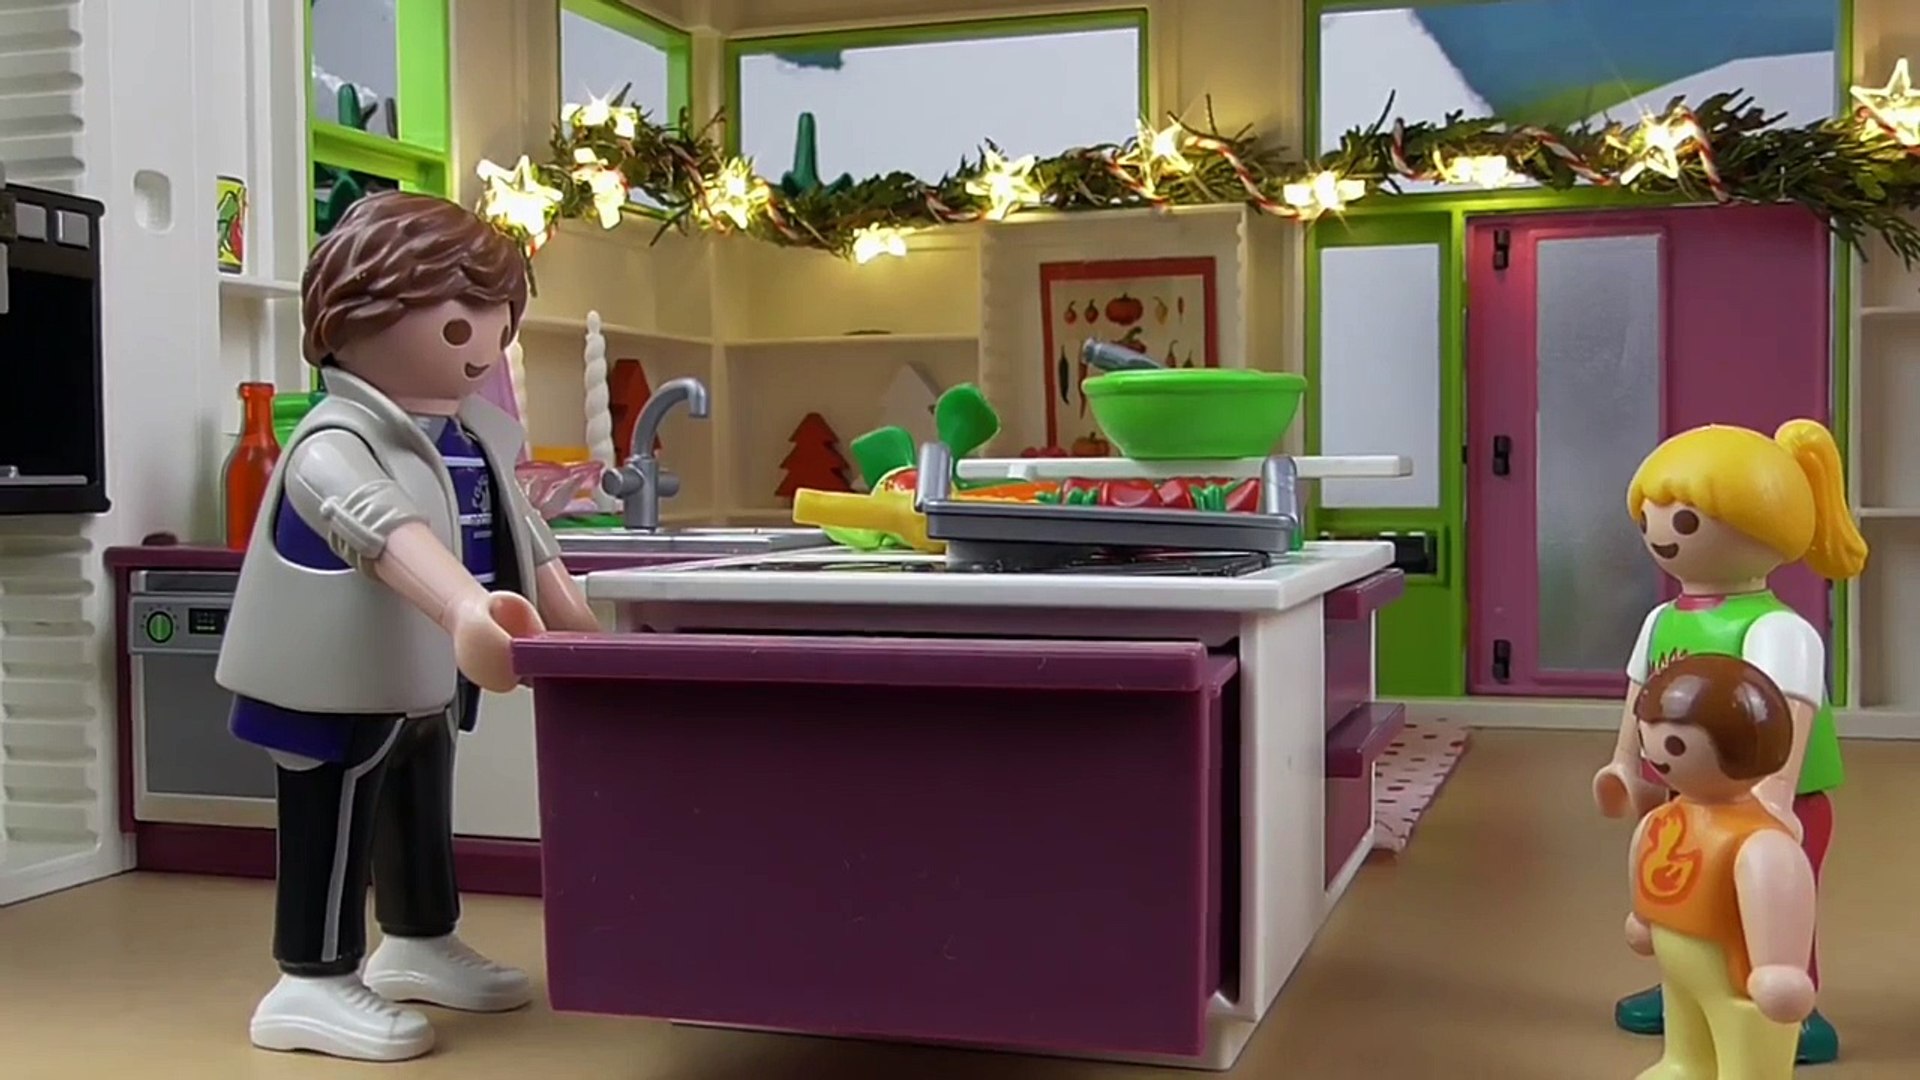 Playmobil Film deutsch Weihnachten mit Familie Hauser von family stories |  mirecraft - video Dailymotion